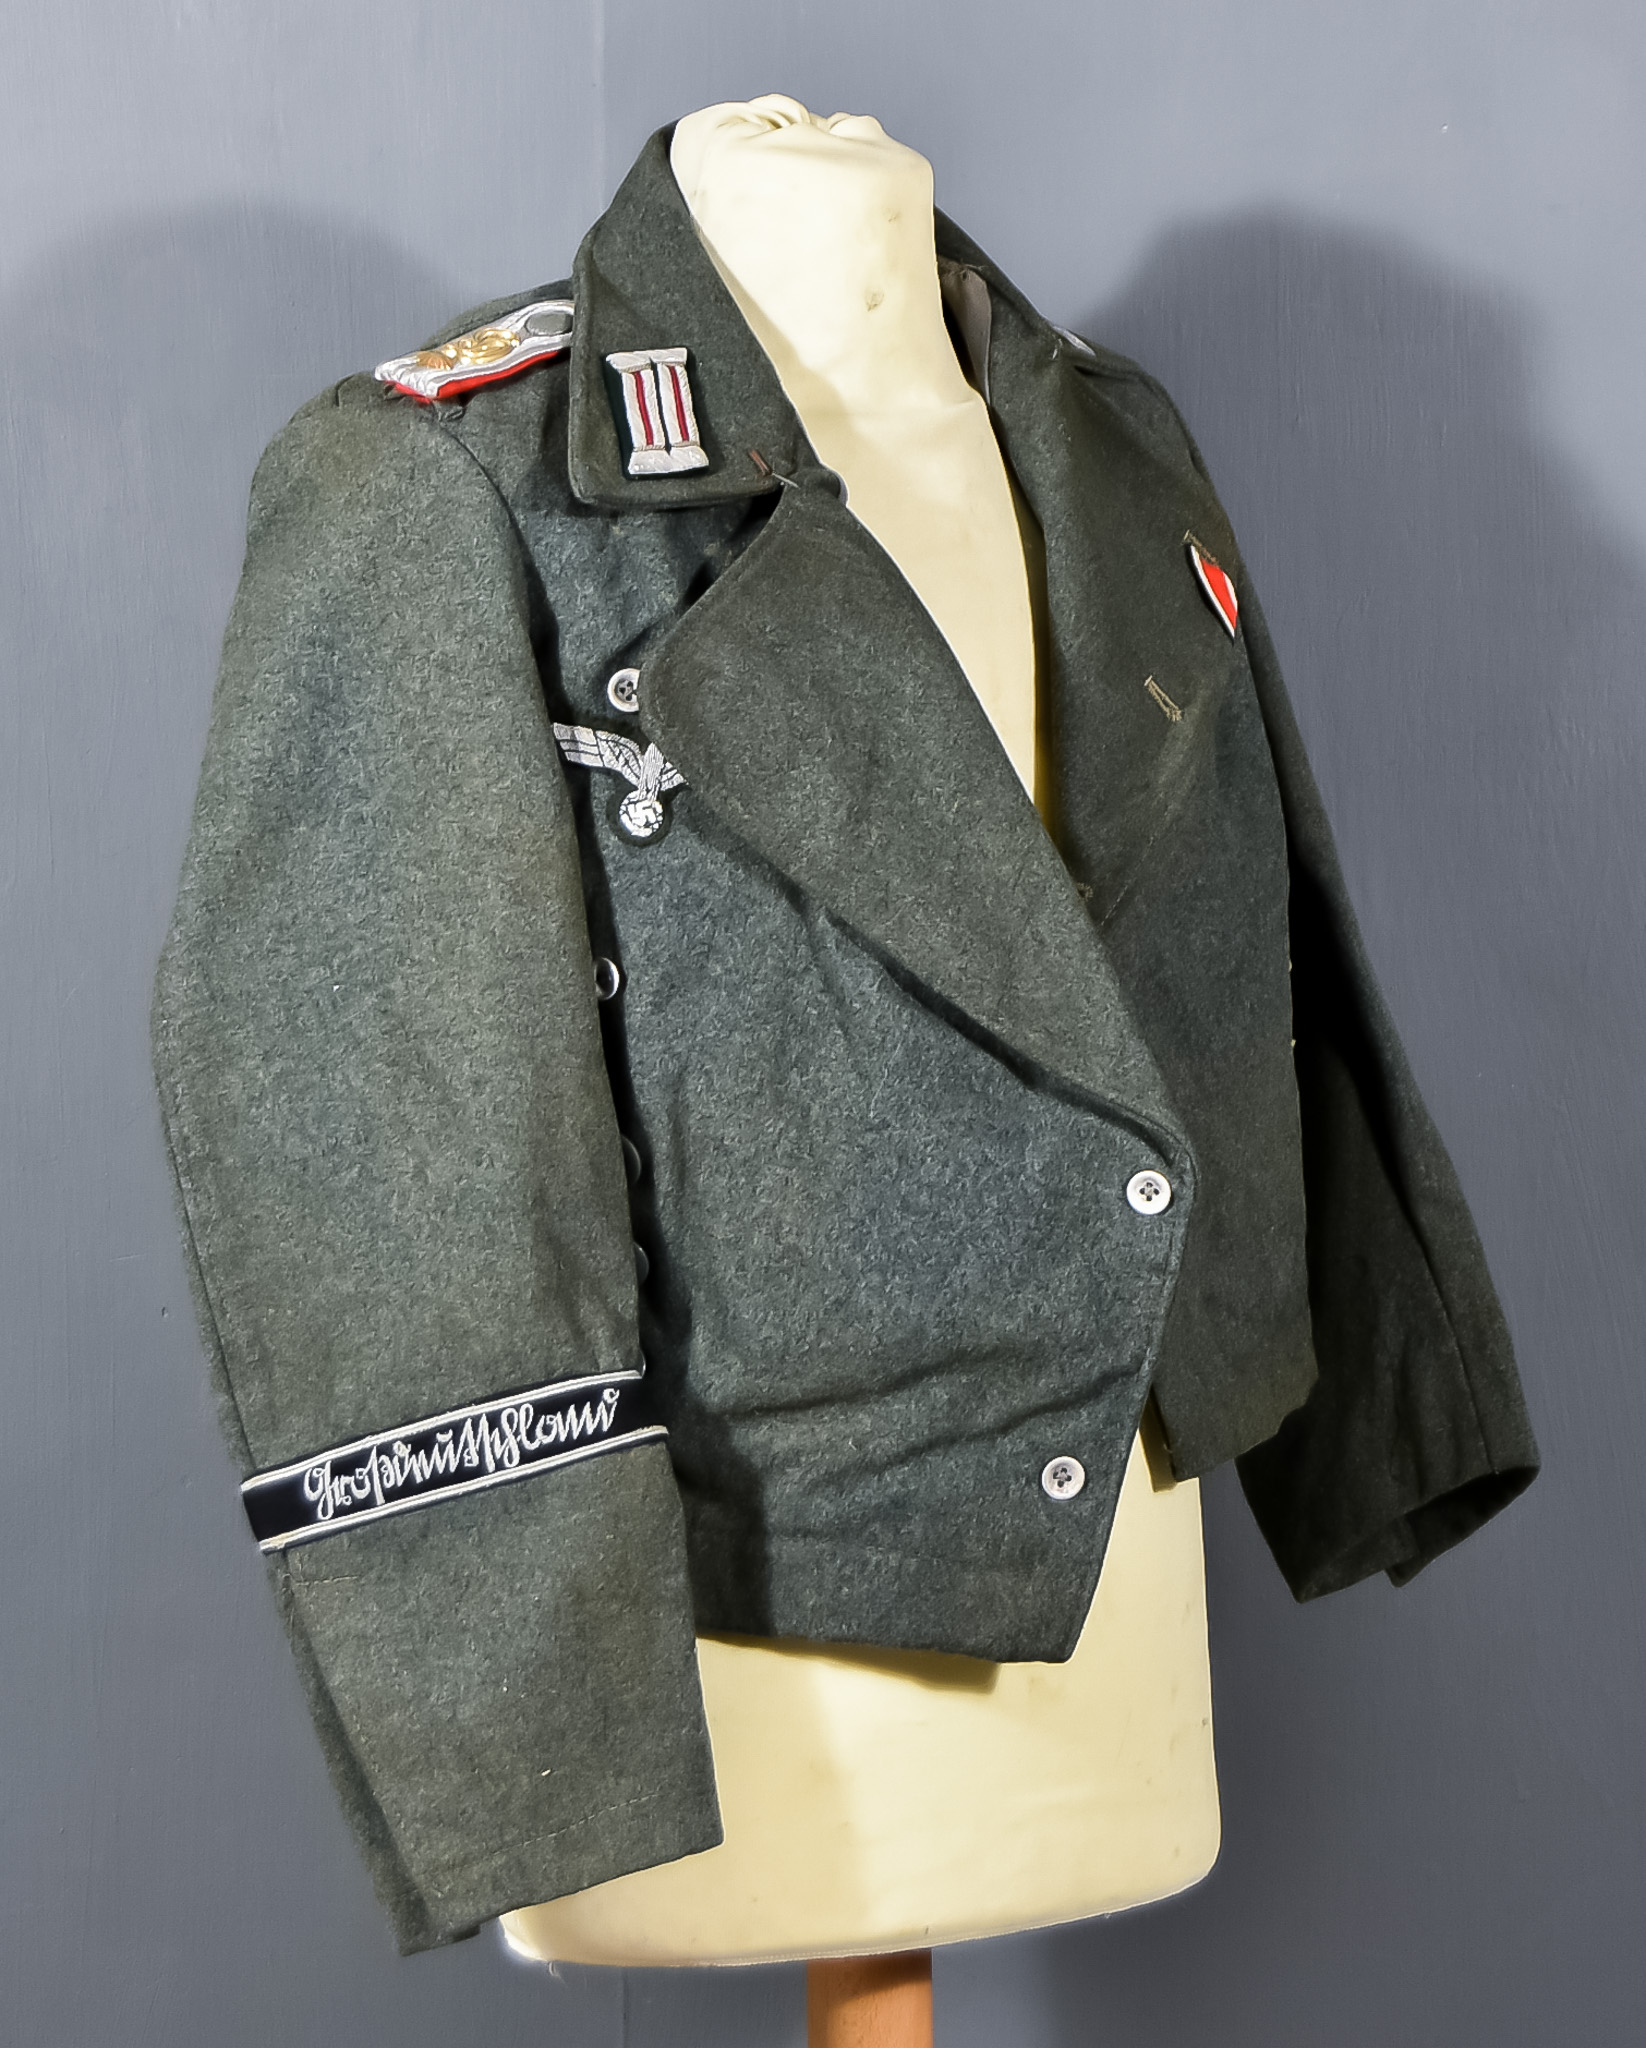 Field Tunic for Feldwebel in Panzer Regiment "Großdeutschland", no markings or labels, in green wool